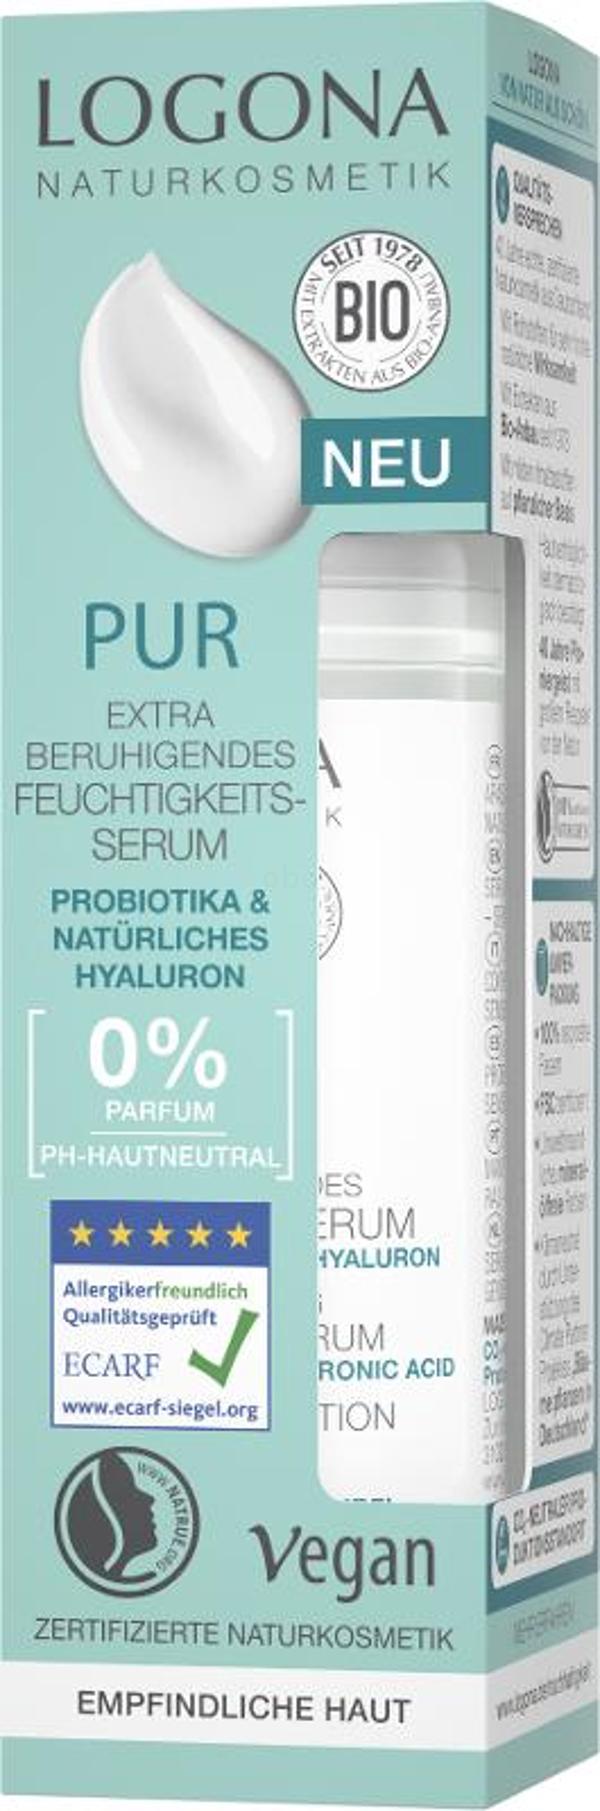 Produktfoto zu PUR beruhigendes Feuchtigkeitsserum Probiotika 30ml